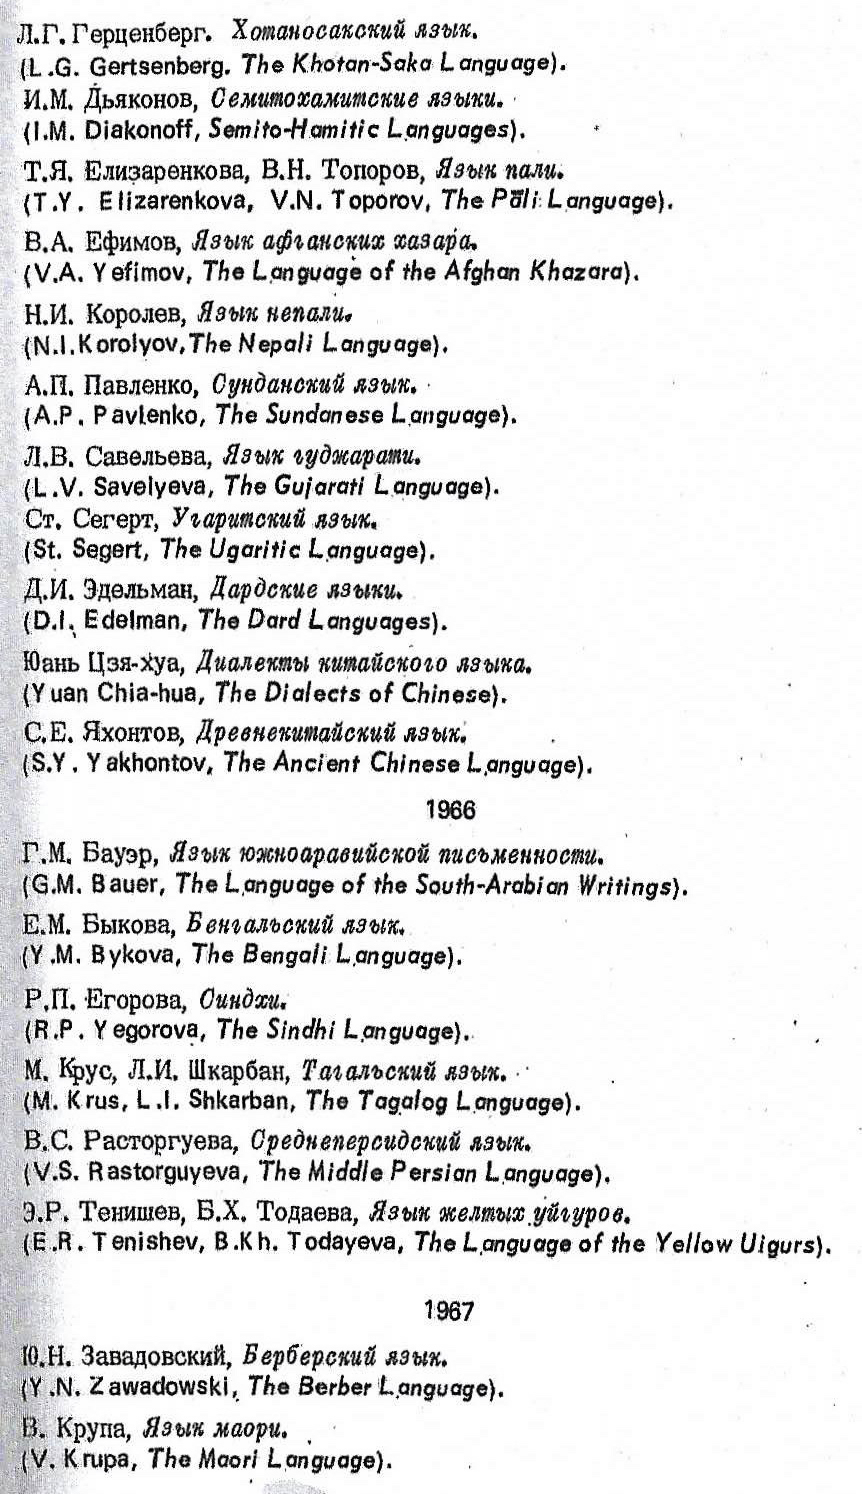 Tsereteli, p. 9 (image)